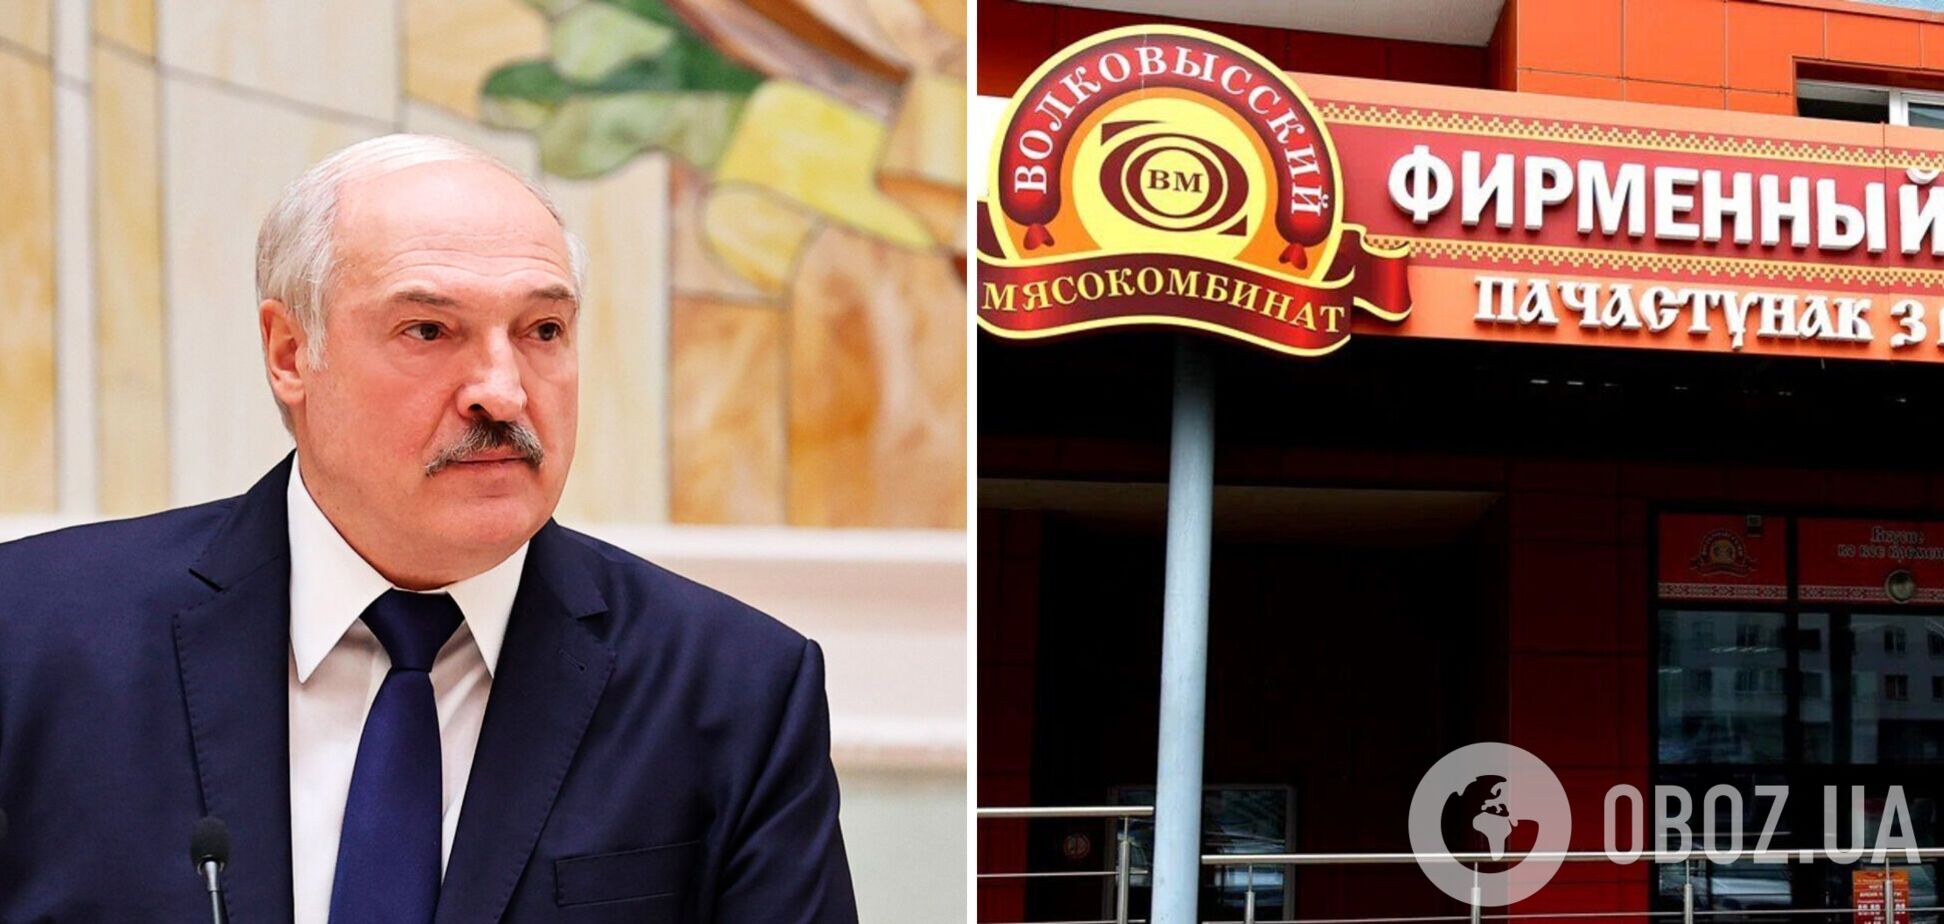 Лукашенко хочет протолкнуть на египетский рынок запрещенное у мусульман мясо – источники в разведке